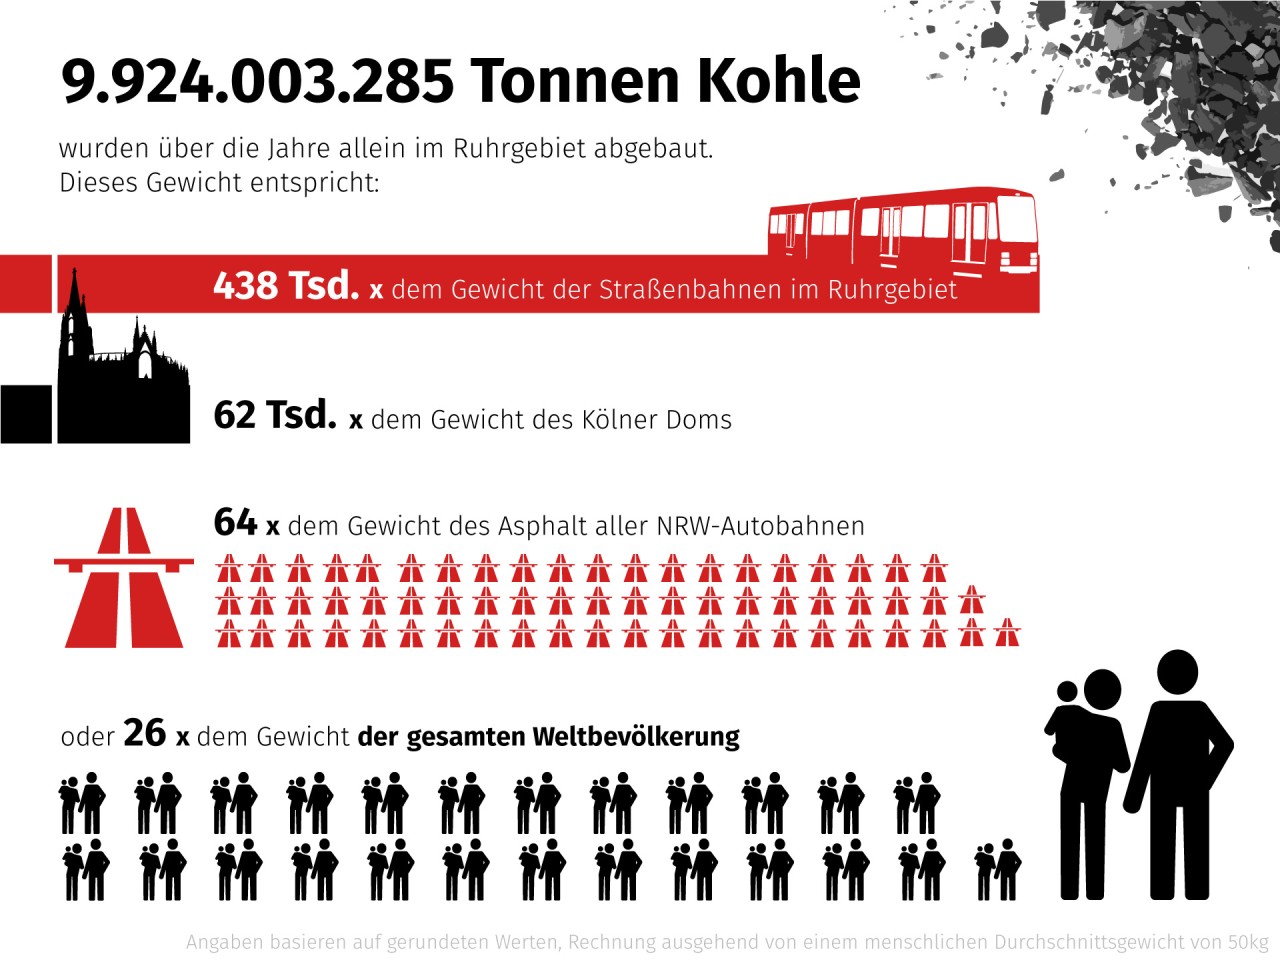 Knapp 10 Milliarden Tonnen Steinkohle haben die Kumpel im Ruhrgebiet gefördert. Wir haben diese unfassbare Zahl in Verhältnis zu anderen Größen gesetzt.